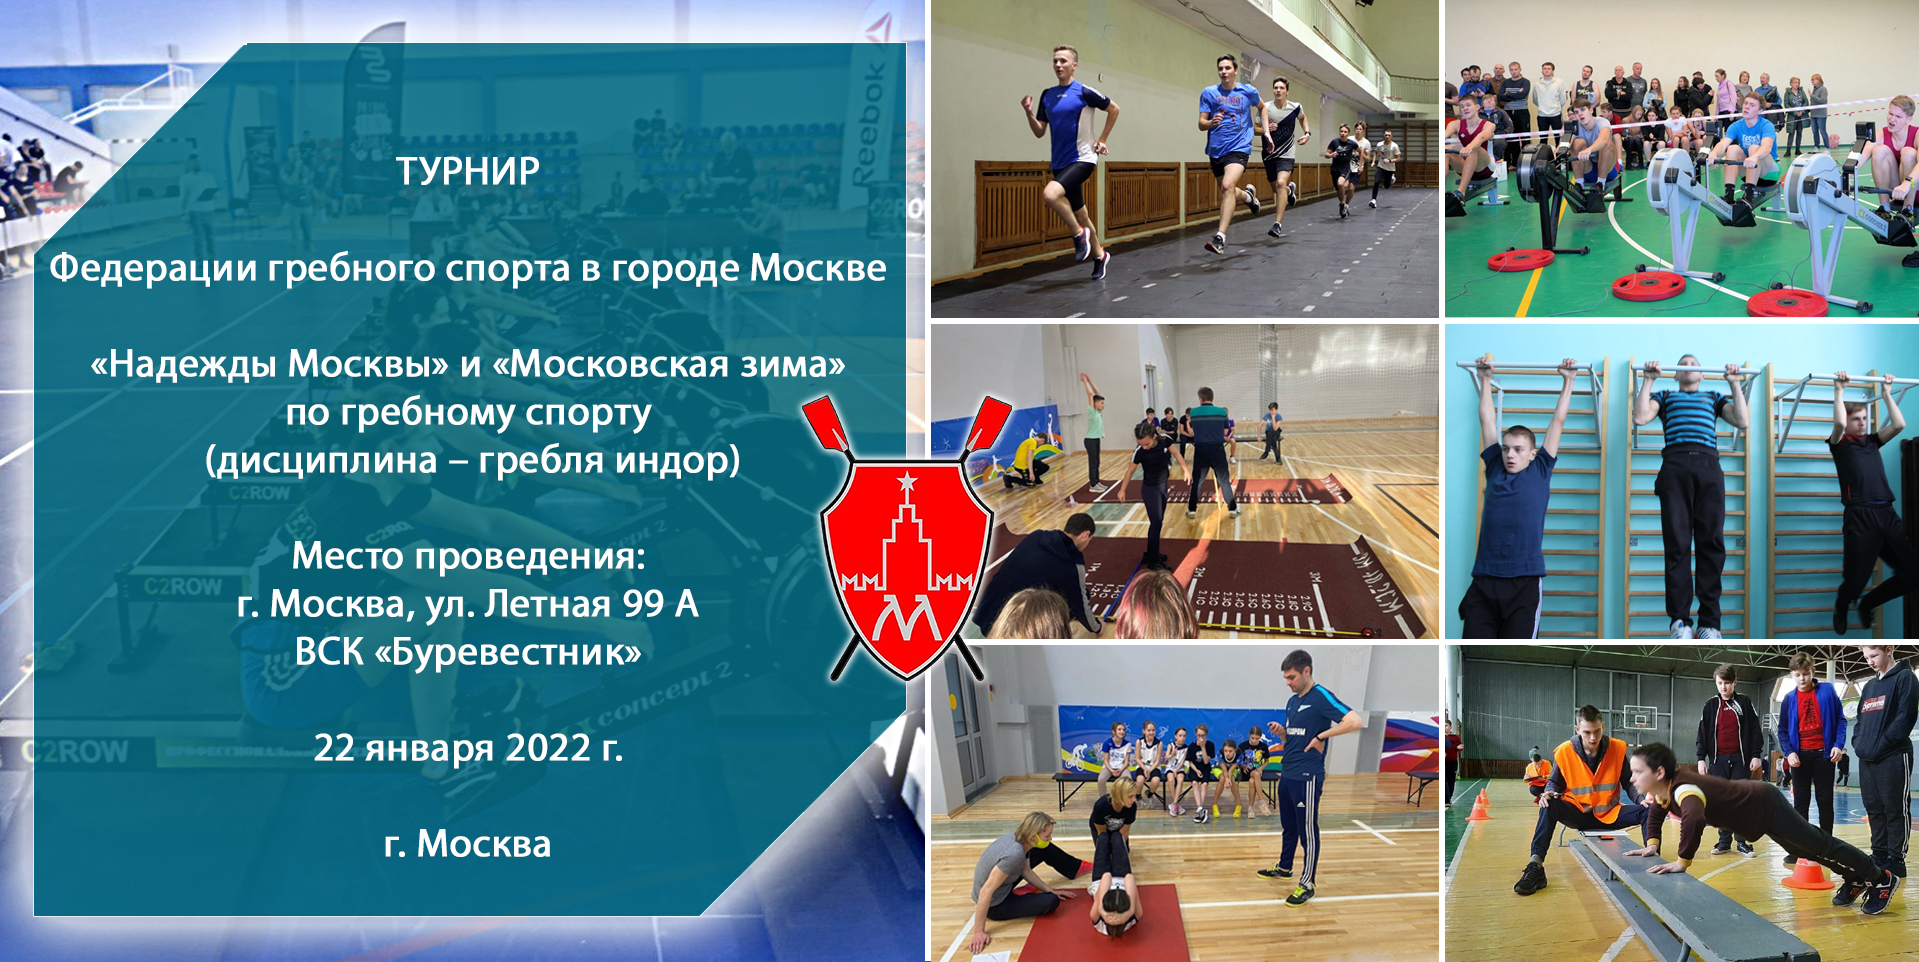 Турнир Федерации гребного спорта в городе Москве 22.01.2022